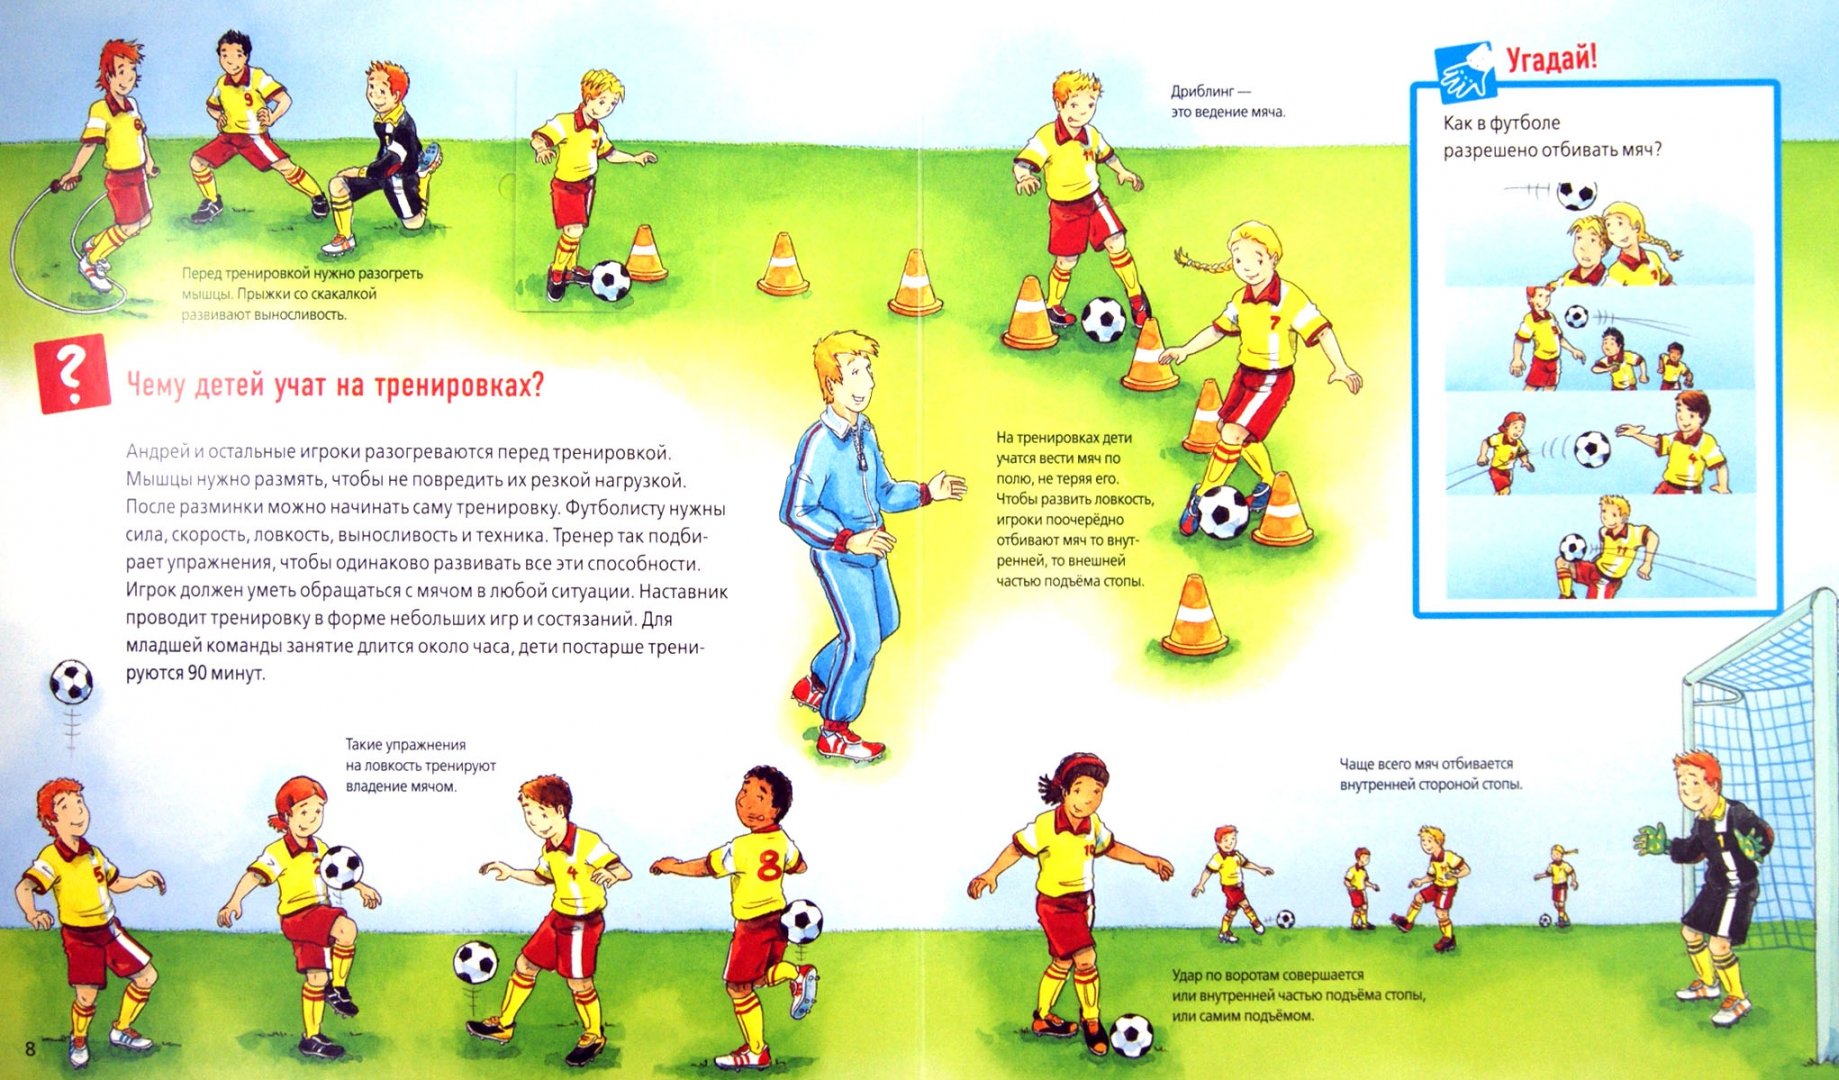 Иллюстрация 1 из 23 для Футбол | Лабиринт - книги. Источник: Лабиринт